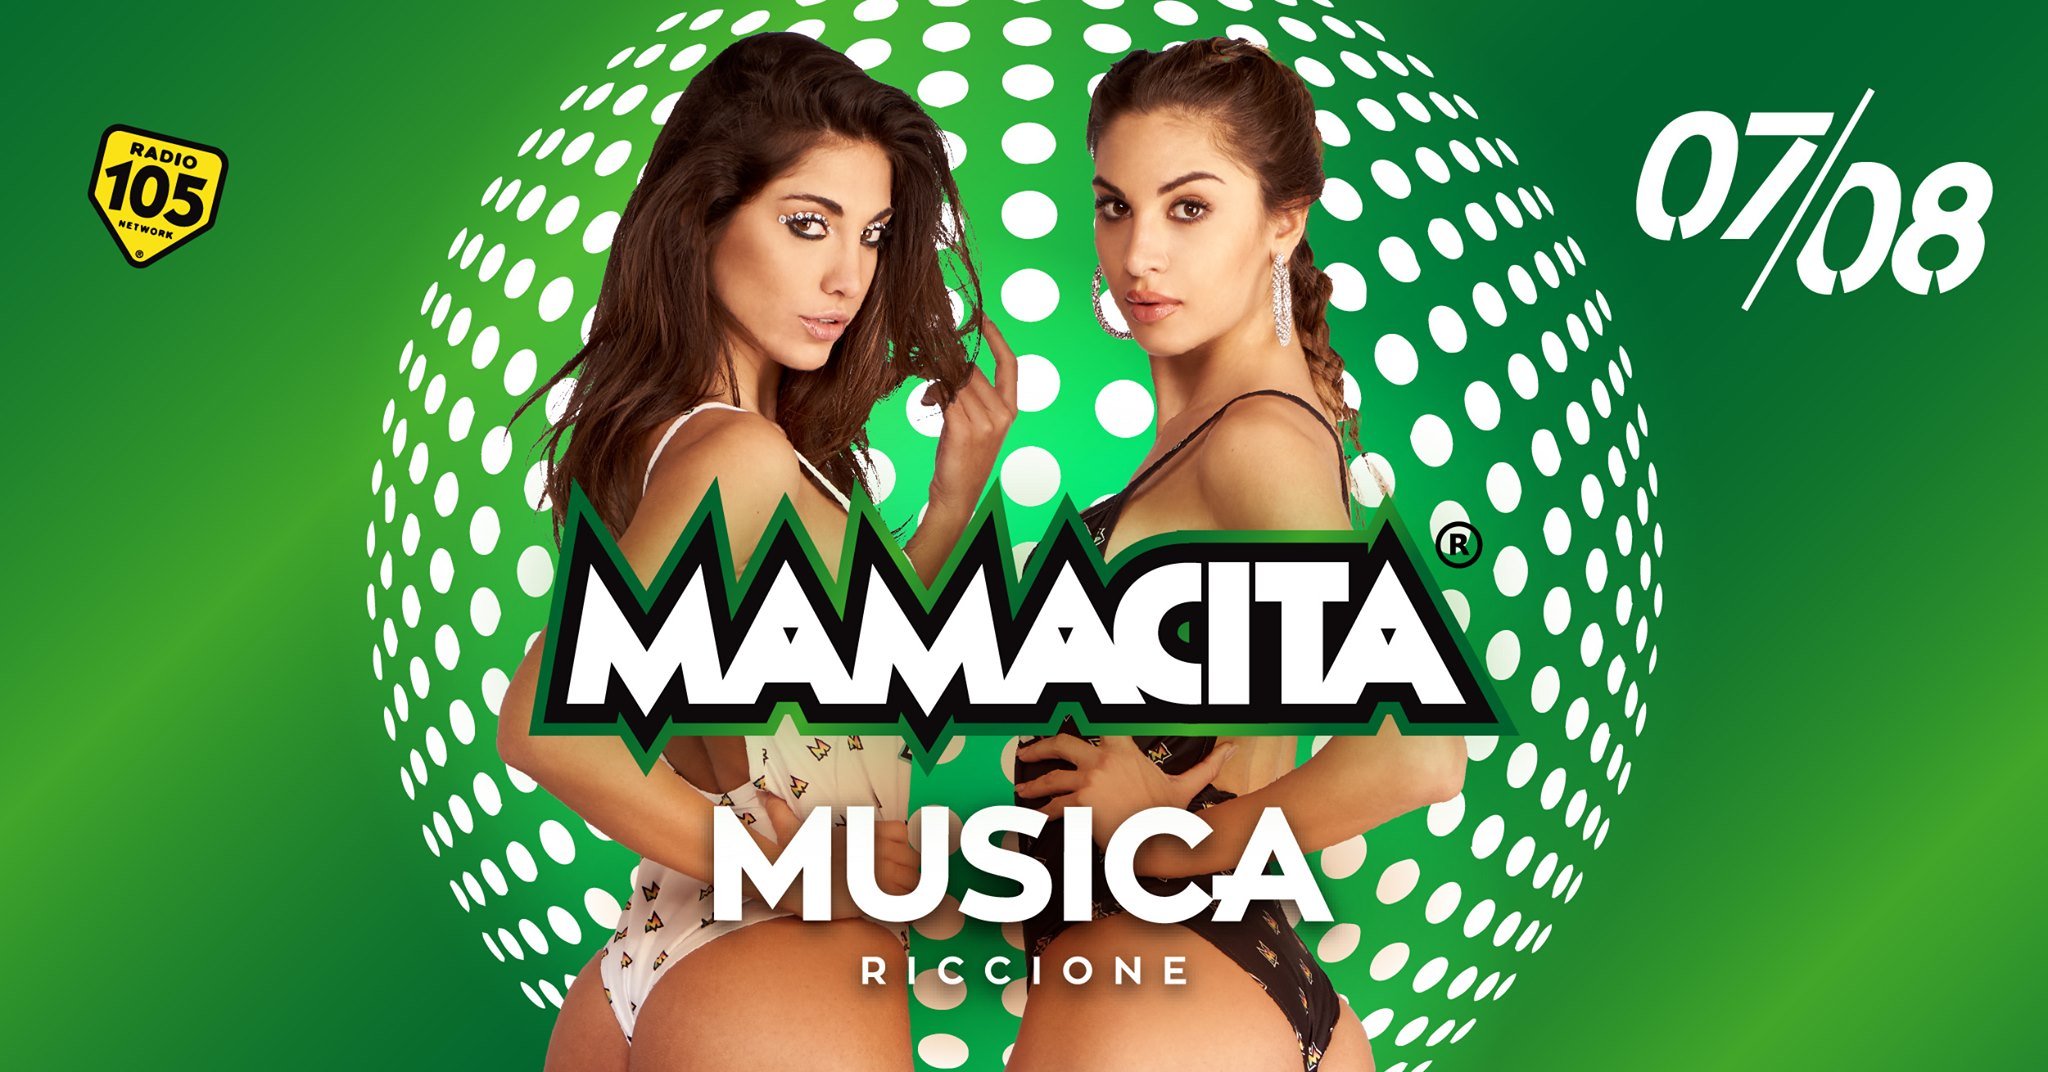 Mamacita Musica Riccione Notte Rosa 07 Agosto 2020